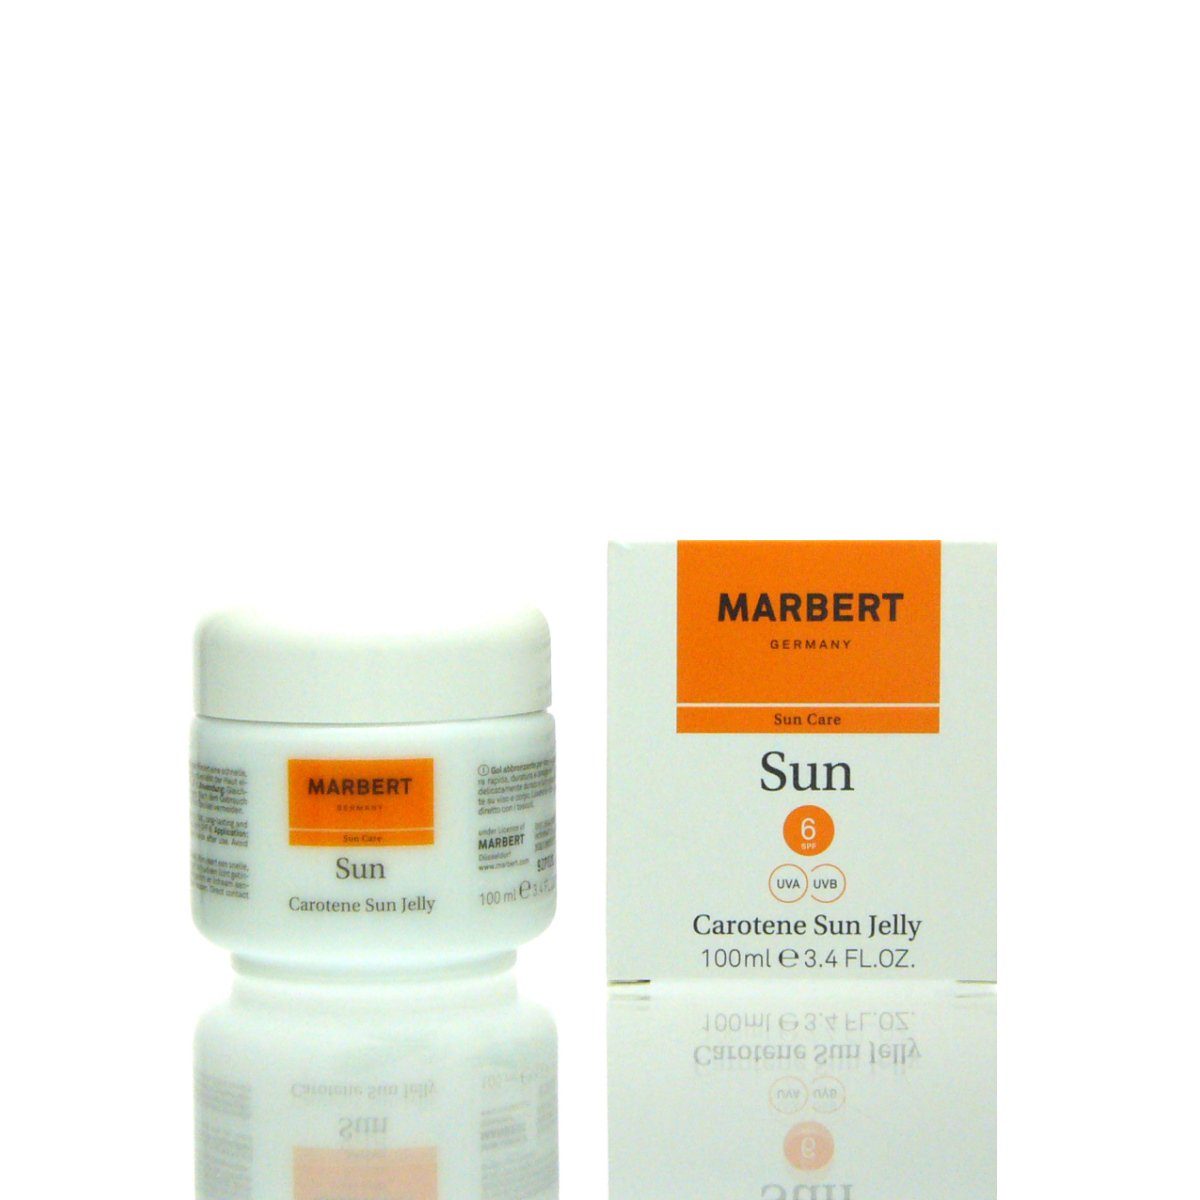 Sun ml Sun 100 6 Jelly Carotene Make-up Marbert Marbert SPF